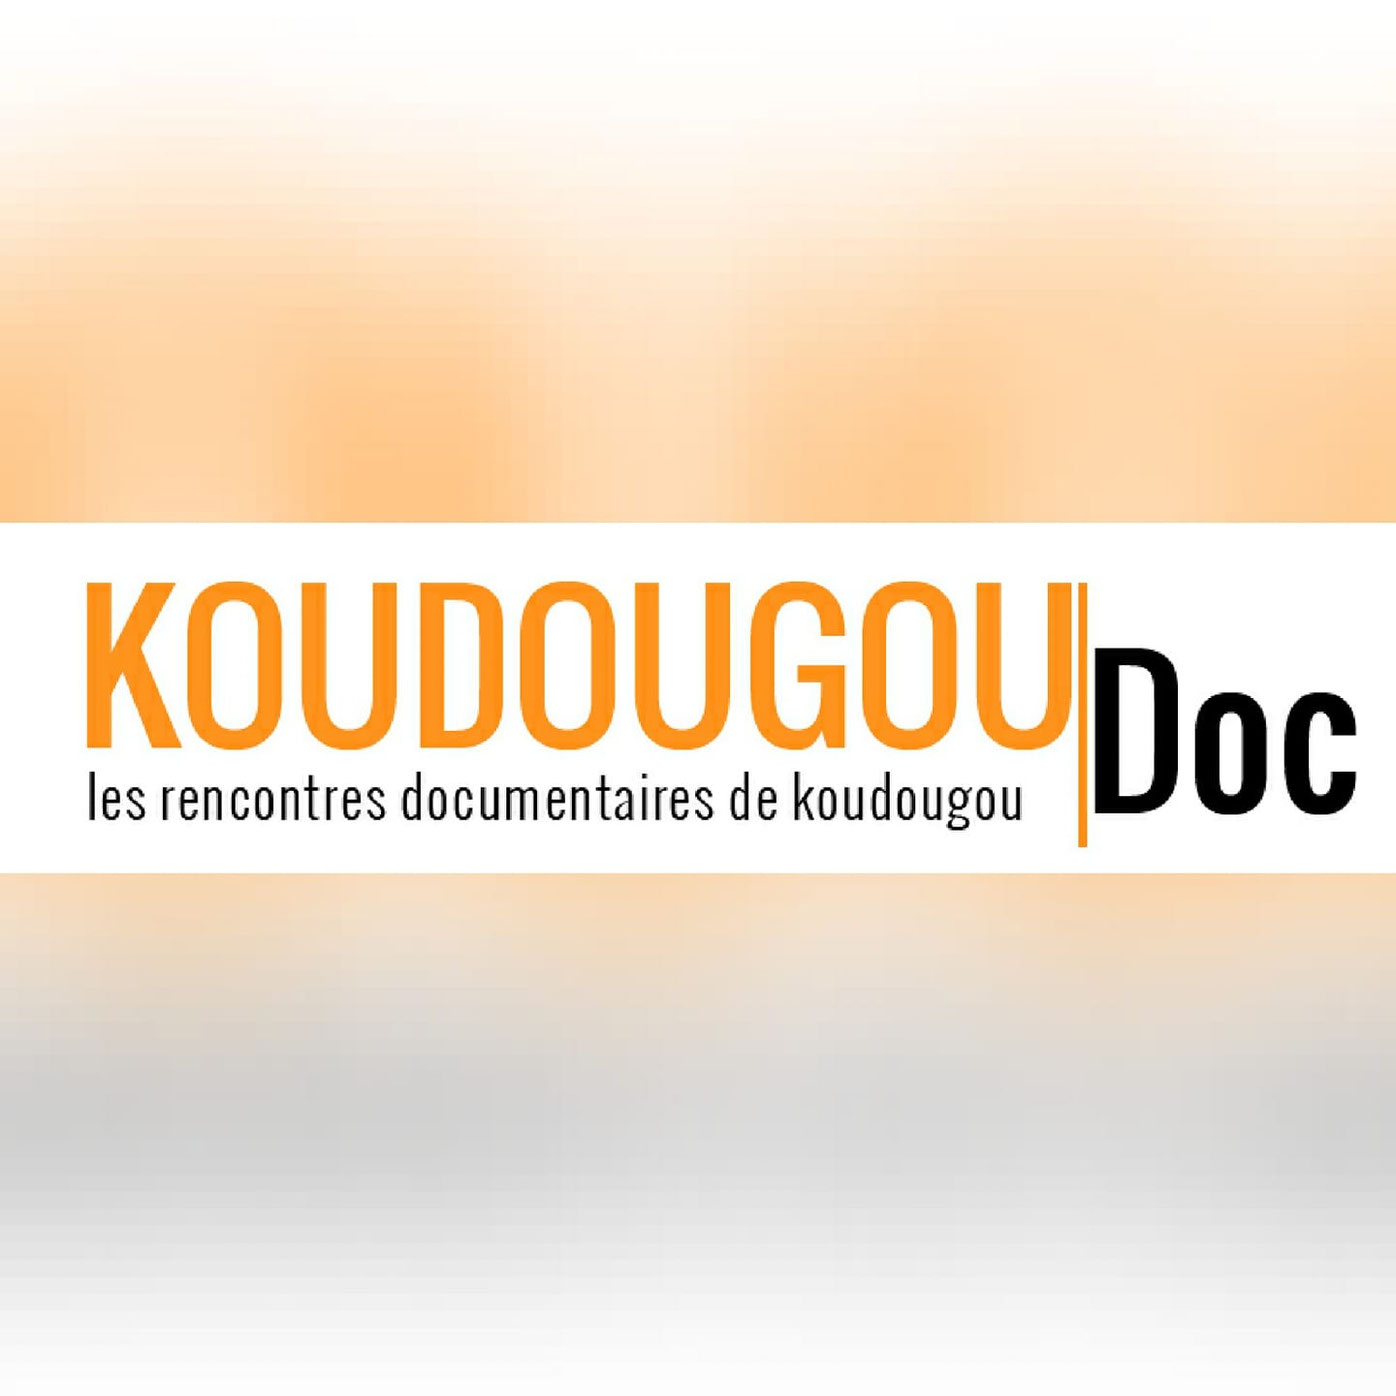 8è édition de Koudougou Doc